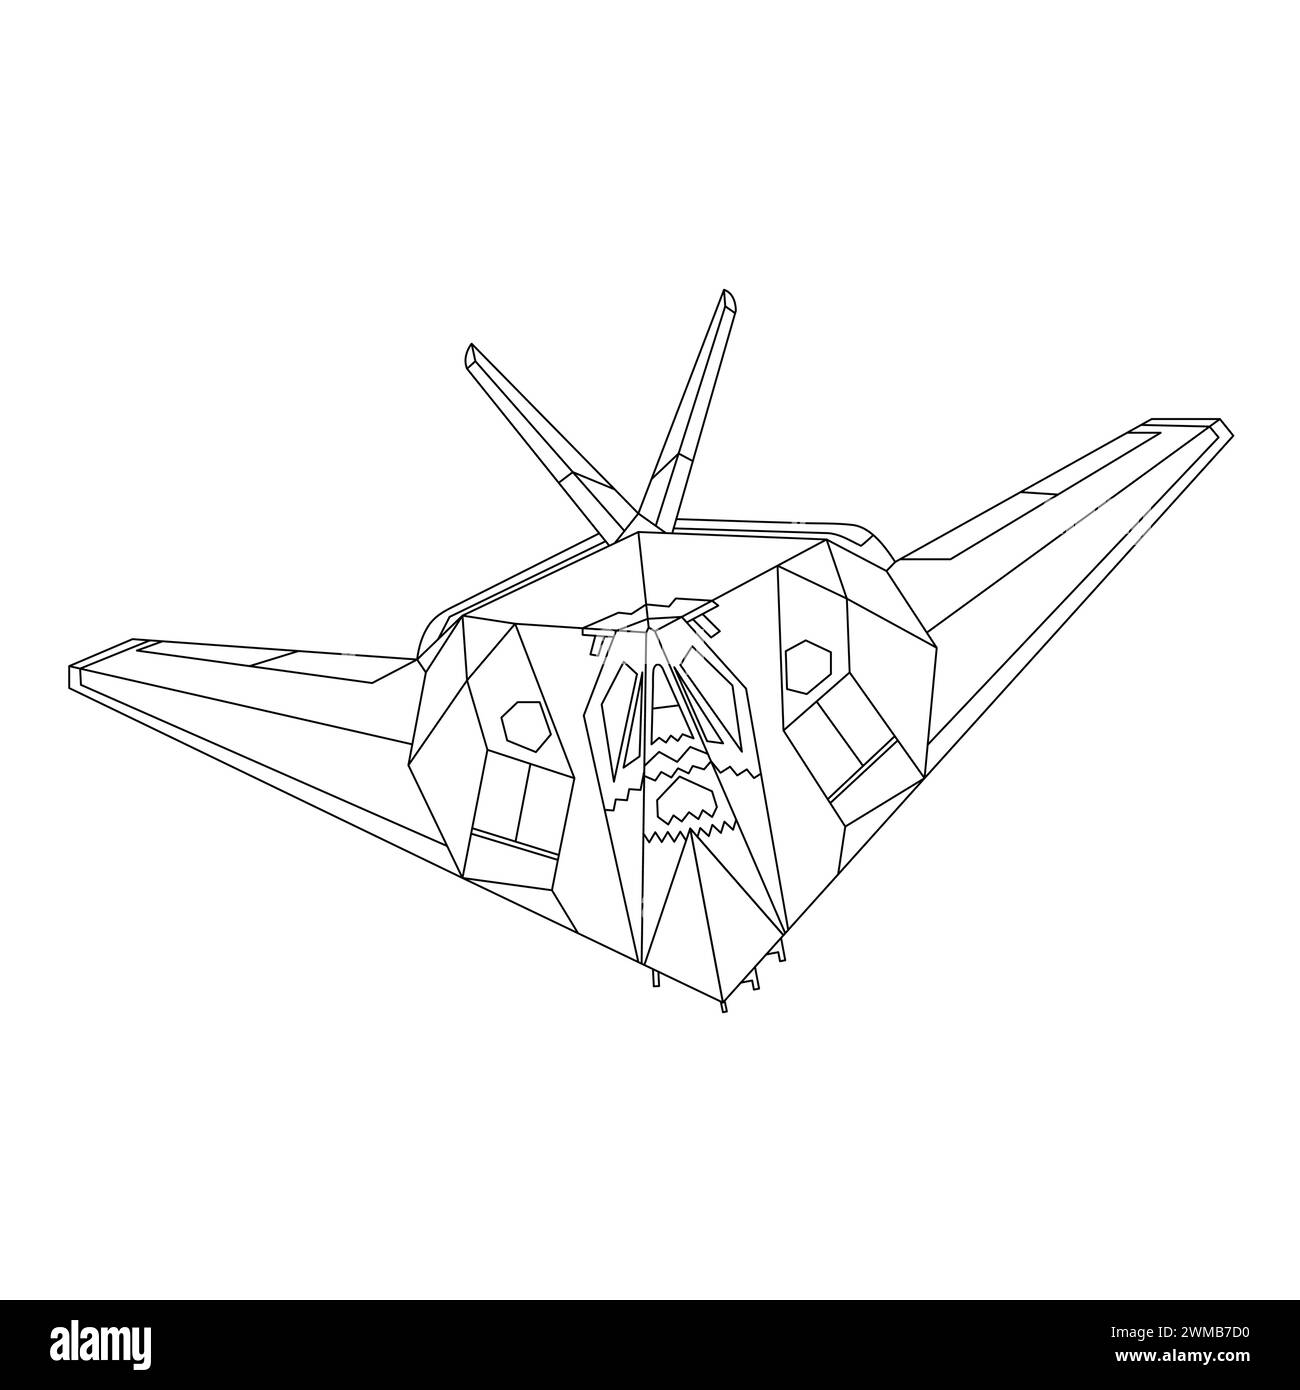 Avion F-117 Nighthawk illustration du plan. Livre de coloriage F117 Fighter Jet pour enfants et adultes. Vecteur d'avion militaire. Avion de dessin animé Illustration de Vecteur